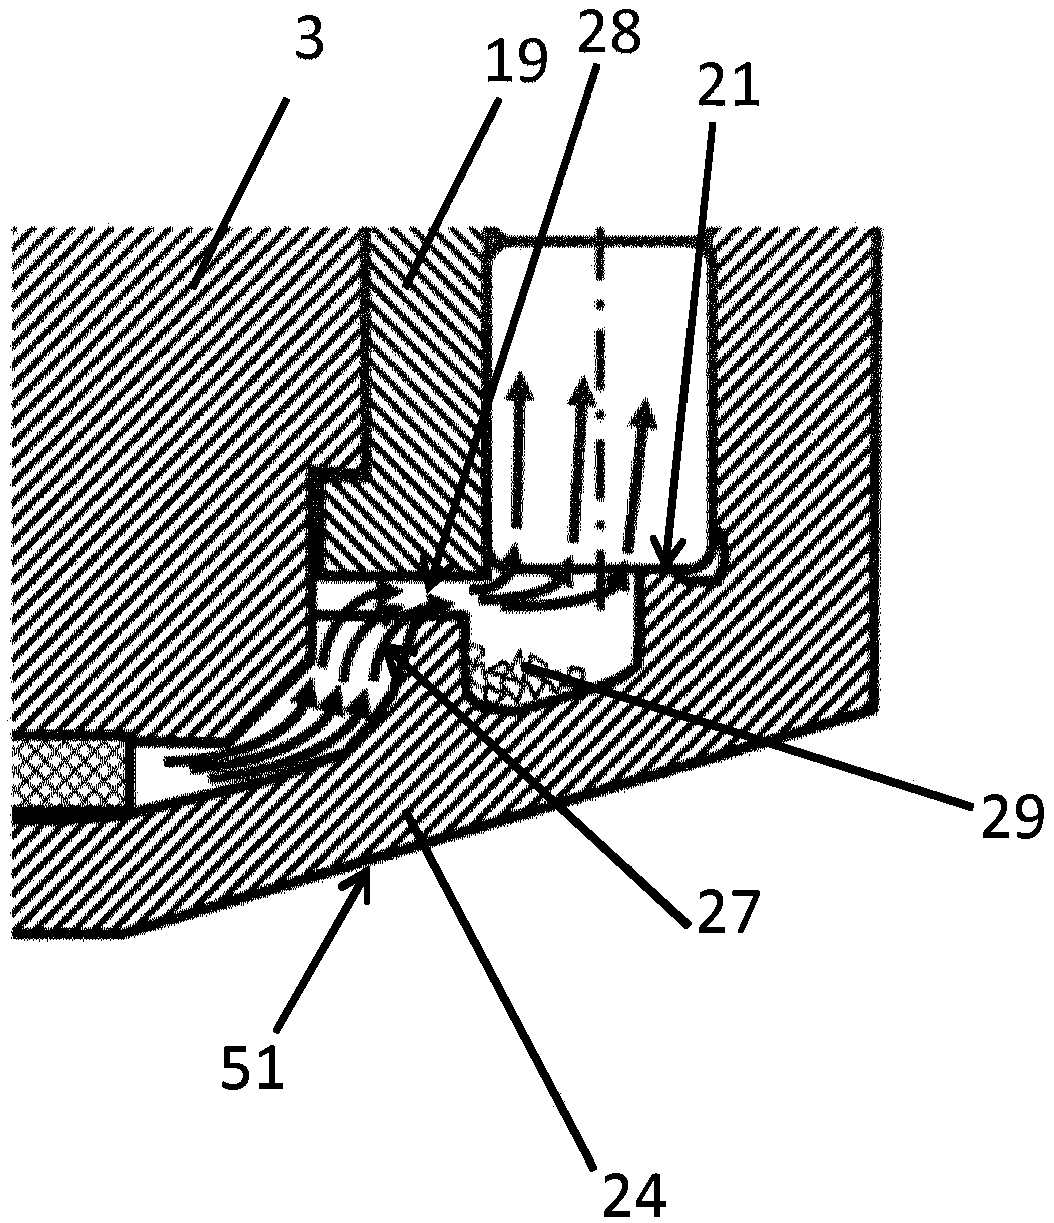 Joint arrangement for an articulated shaft